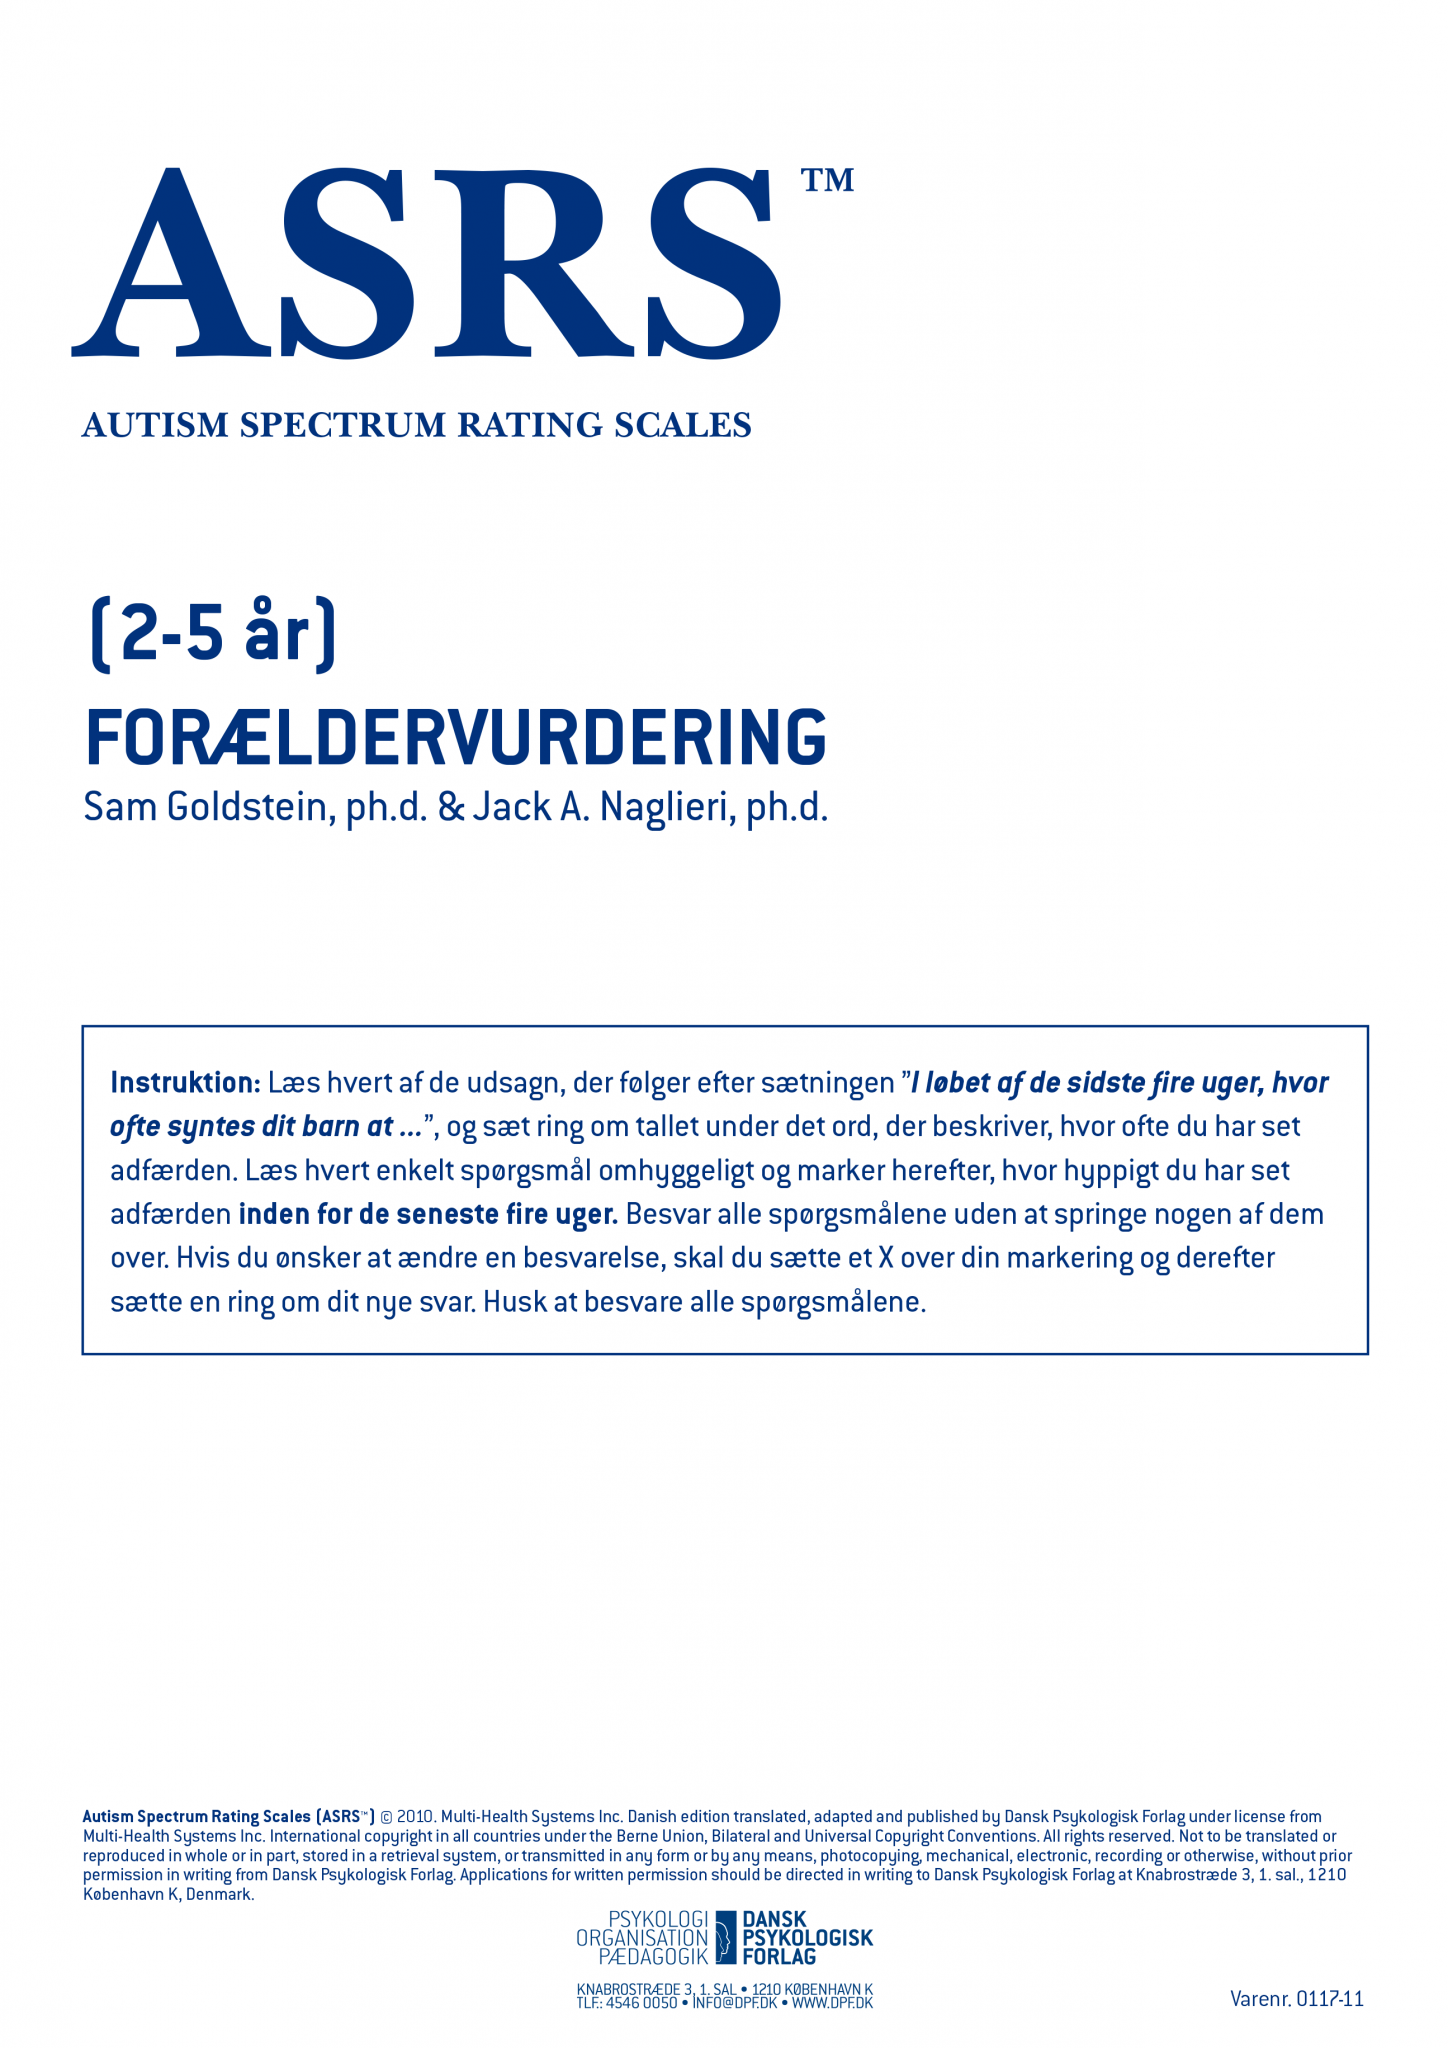 asrs-autism-spectrum-rating-scales-dansk-psykologisk-forlag